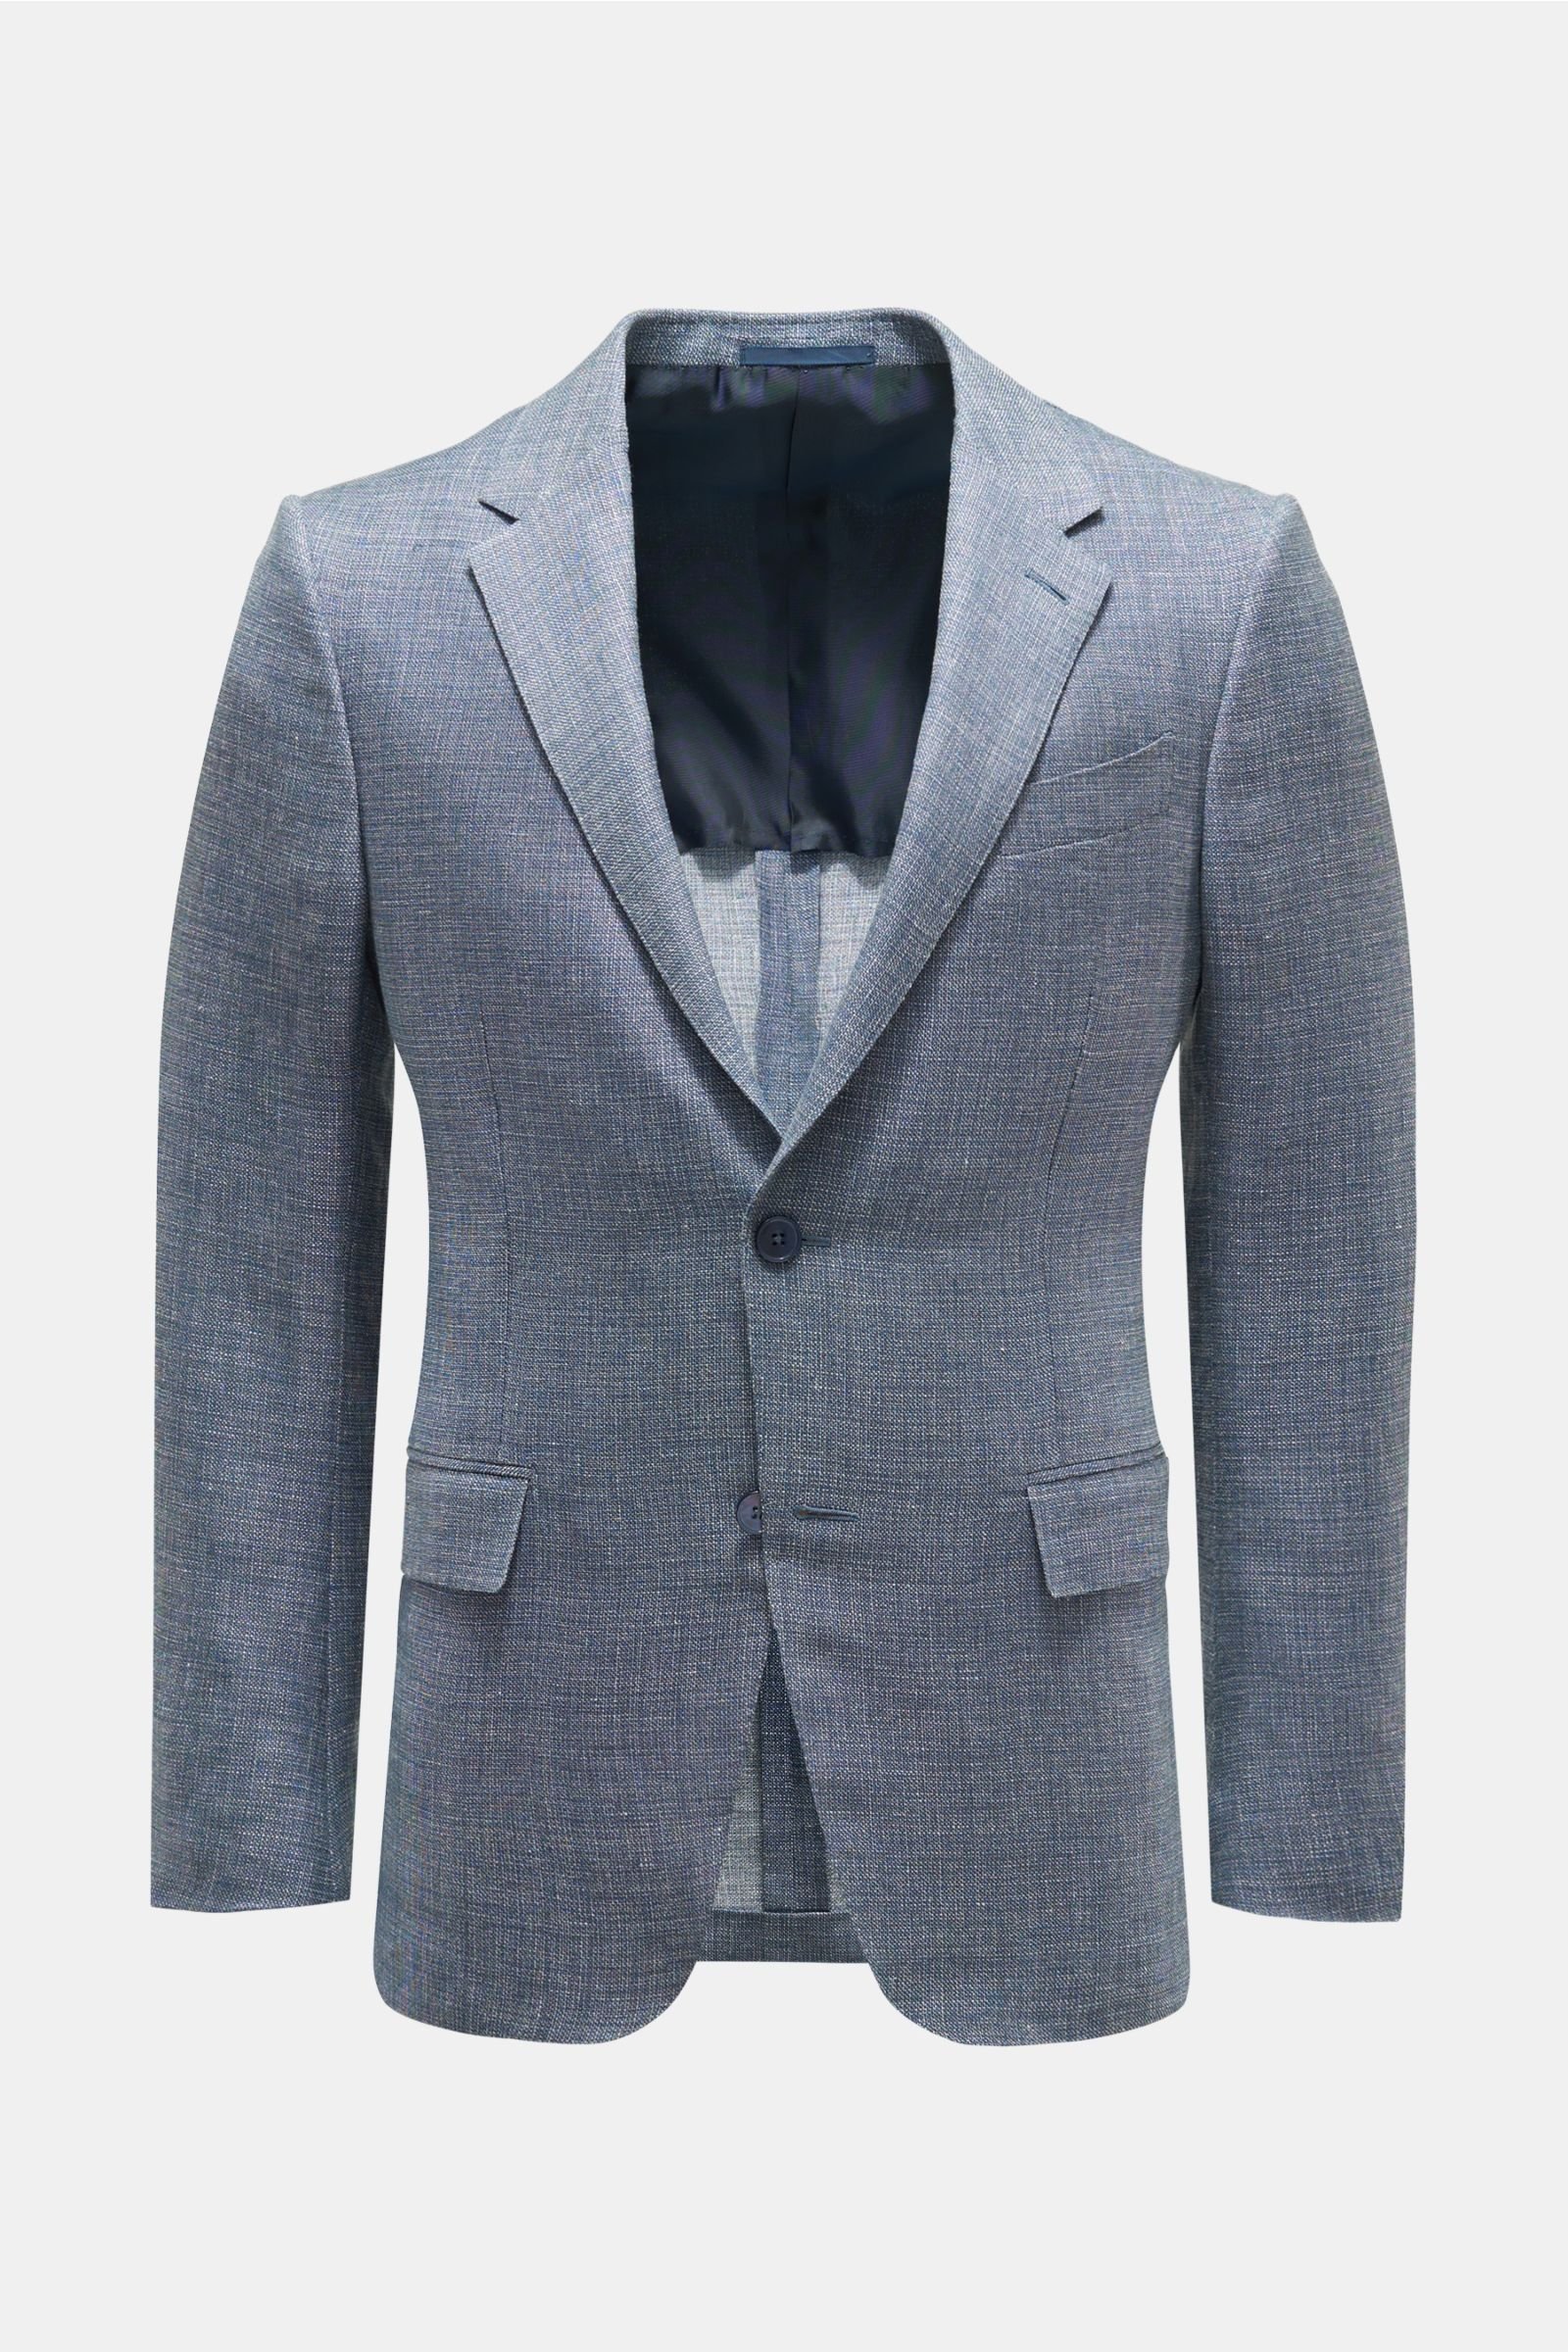 Smart-casual jacket 'Milano Easy' grey-blue